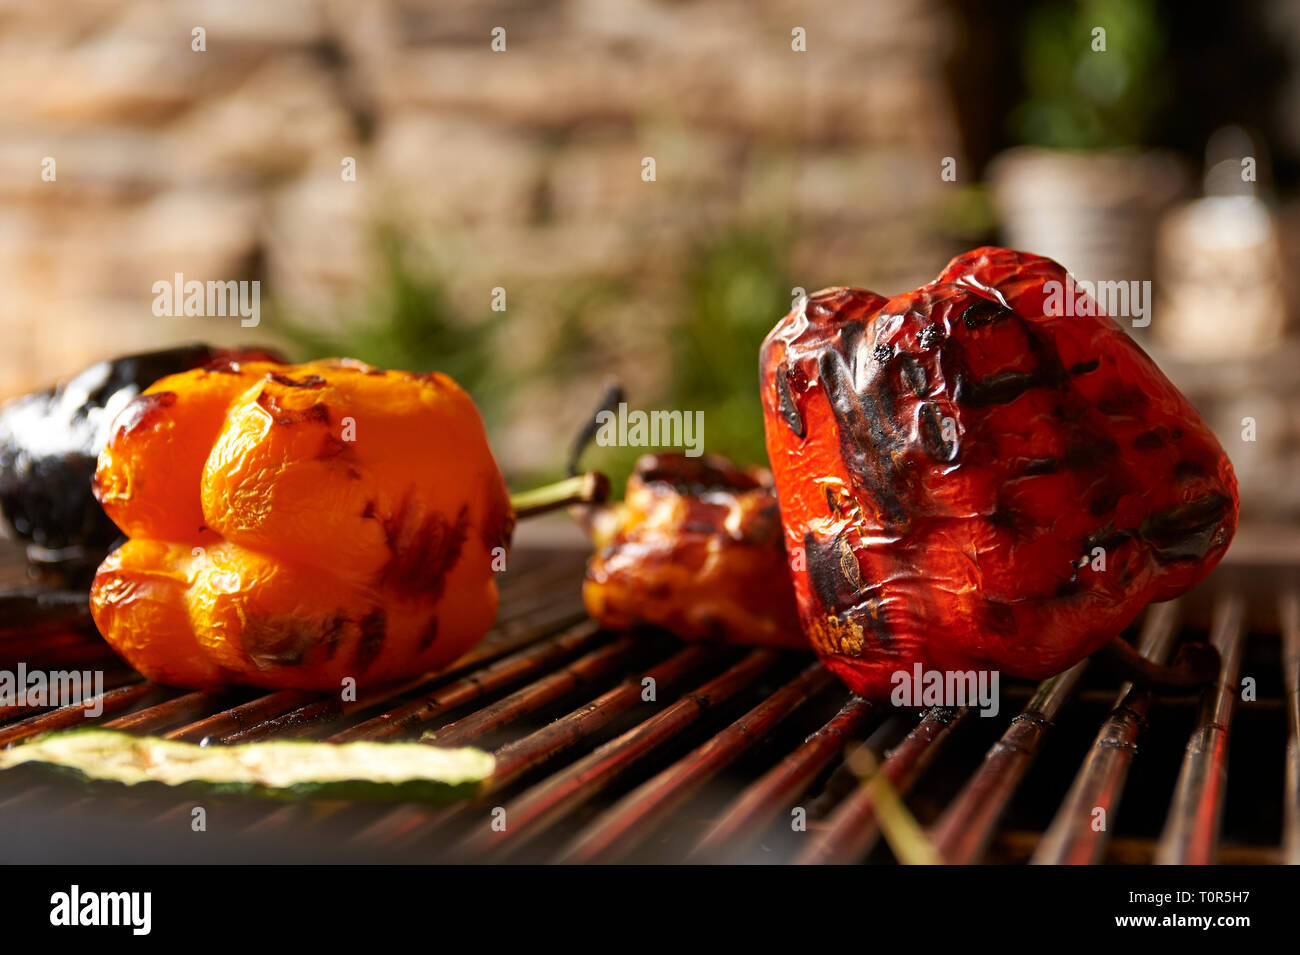 Dunkel gegrillte Paprika liegt auf einem Grillrost auf dem Grill. Stock Photo